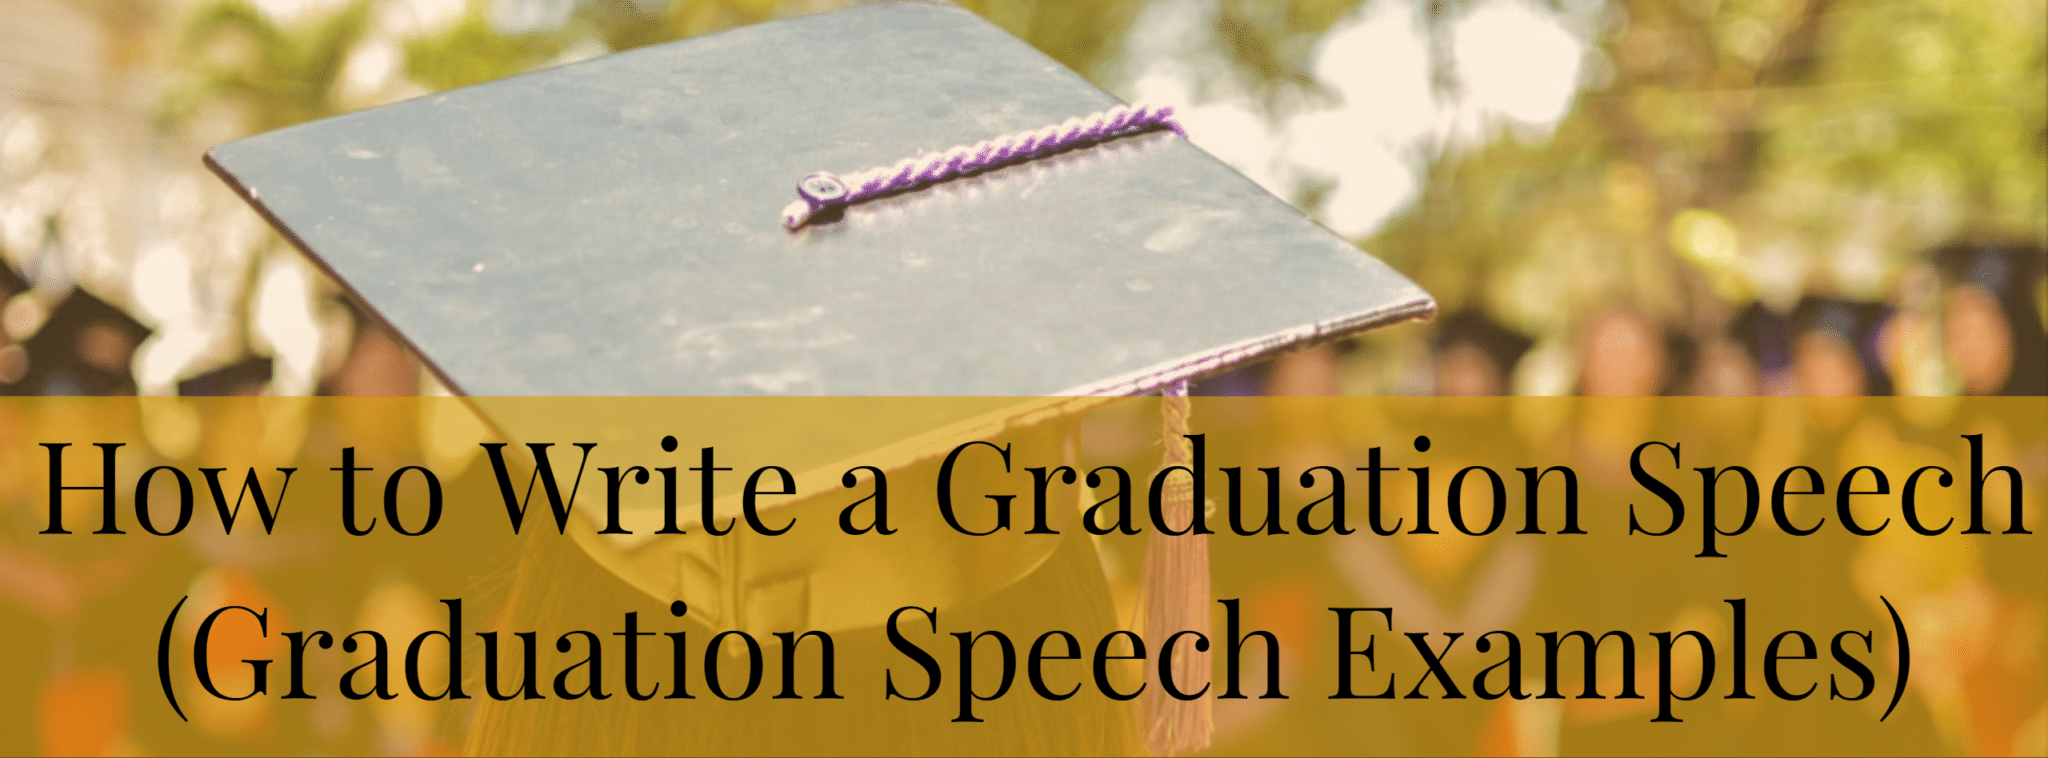 https://www.fearlesspresentations.com/wp-content/uploads/2019/07/How-to-Write-a-Graduation-Speech-Graduation-Speech-Examples